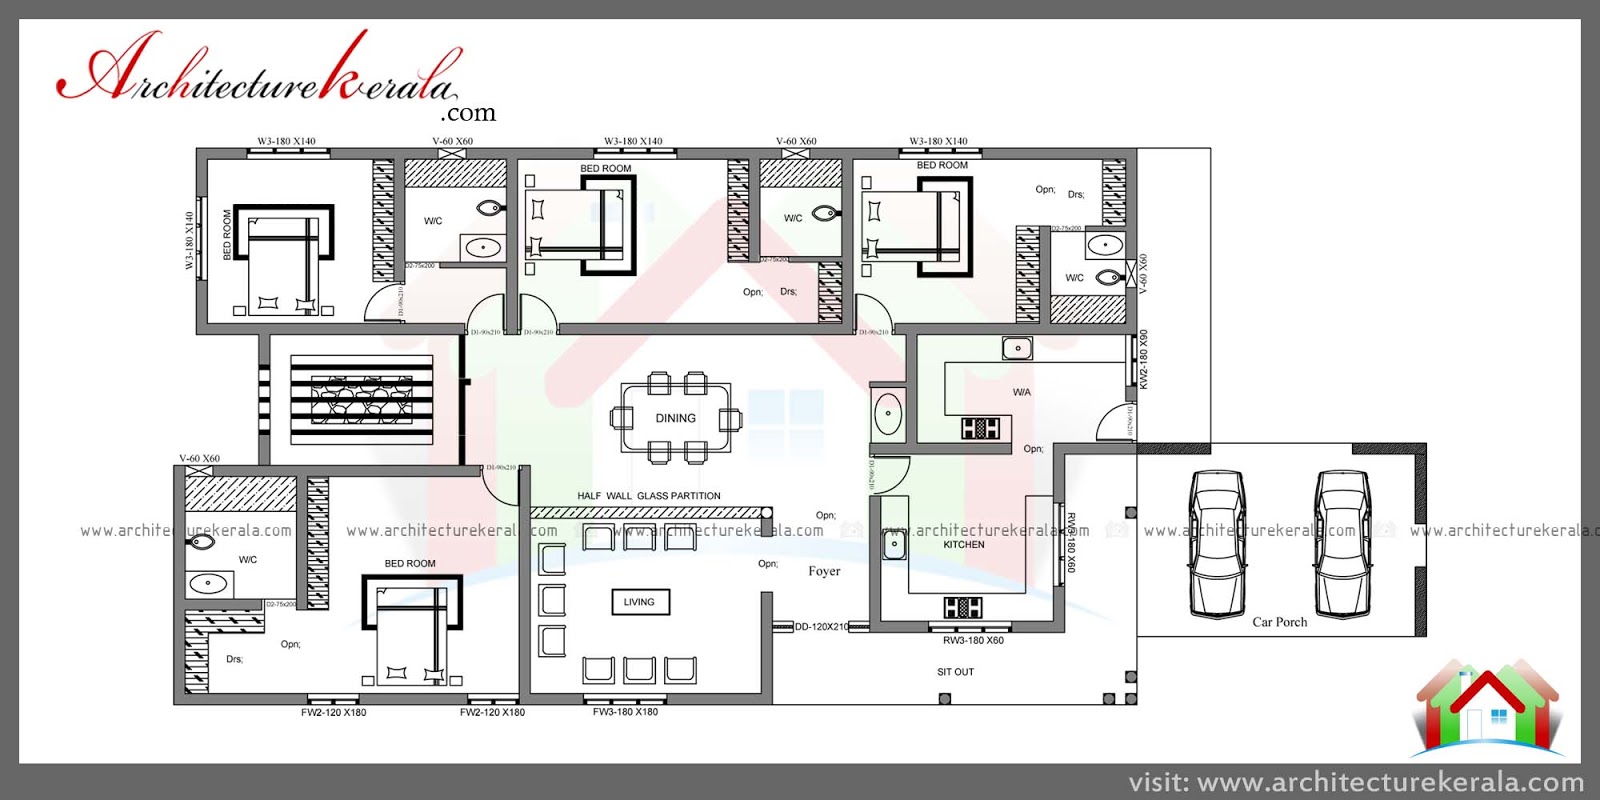 House Plan With Nadumuttam - Home Design Ideas